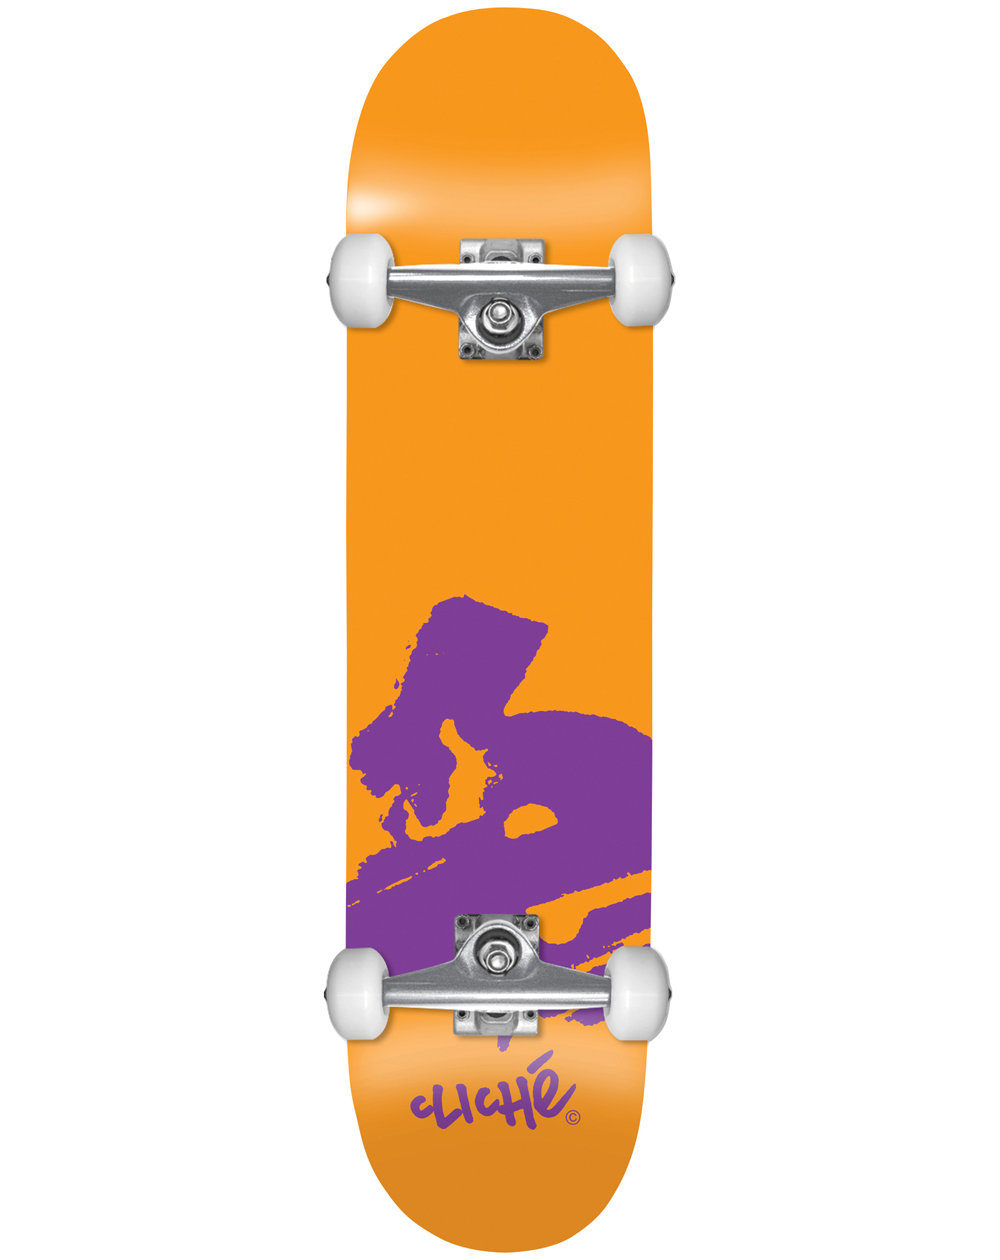 Cliché Skateboard Completo Europe 7.875" Orange